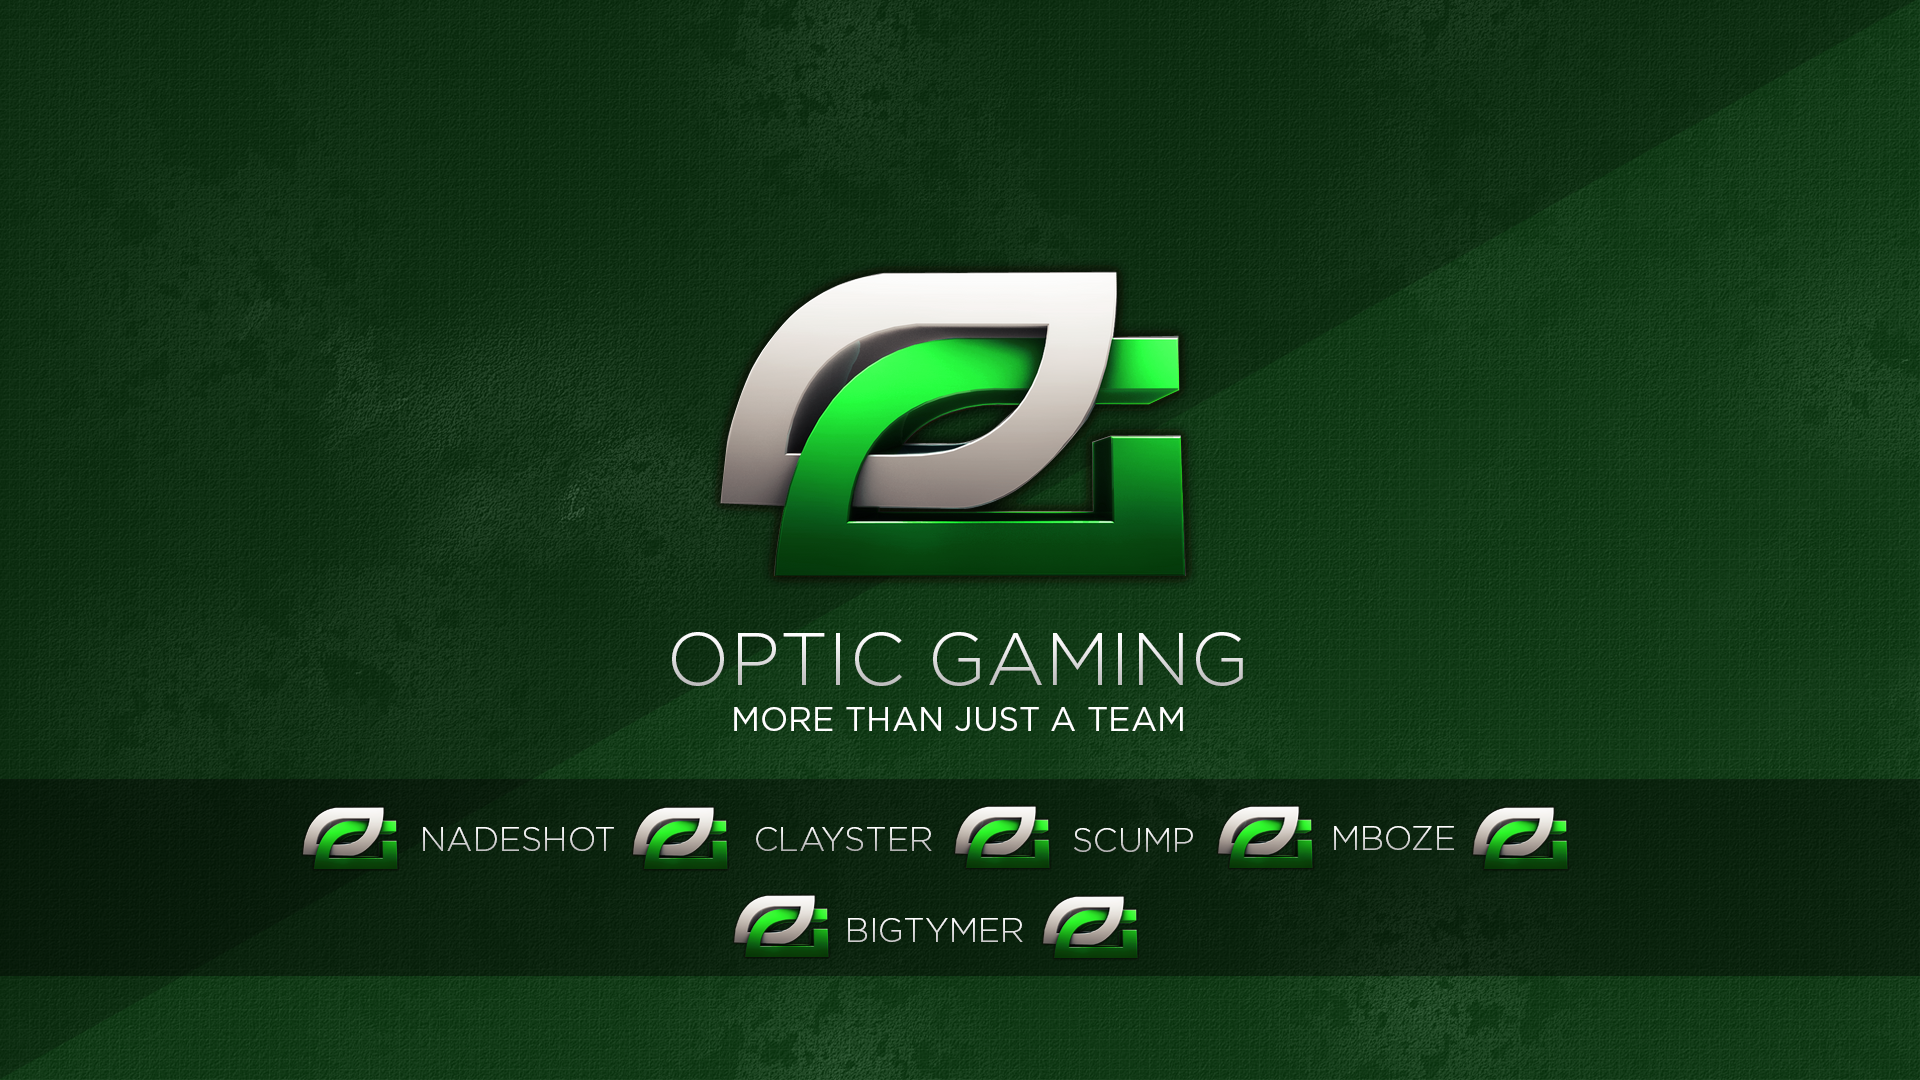 Optic Gaming 2015 Optic Gaming Desktop